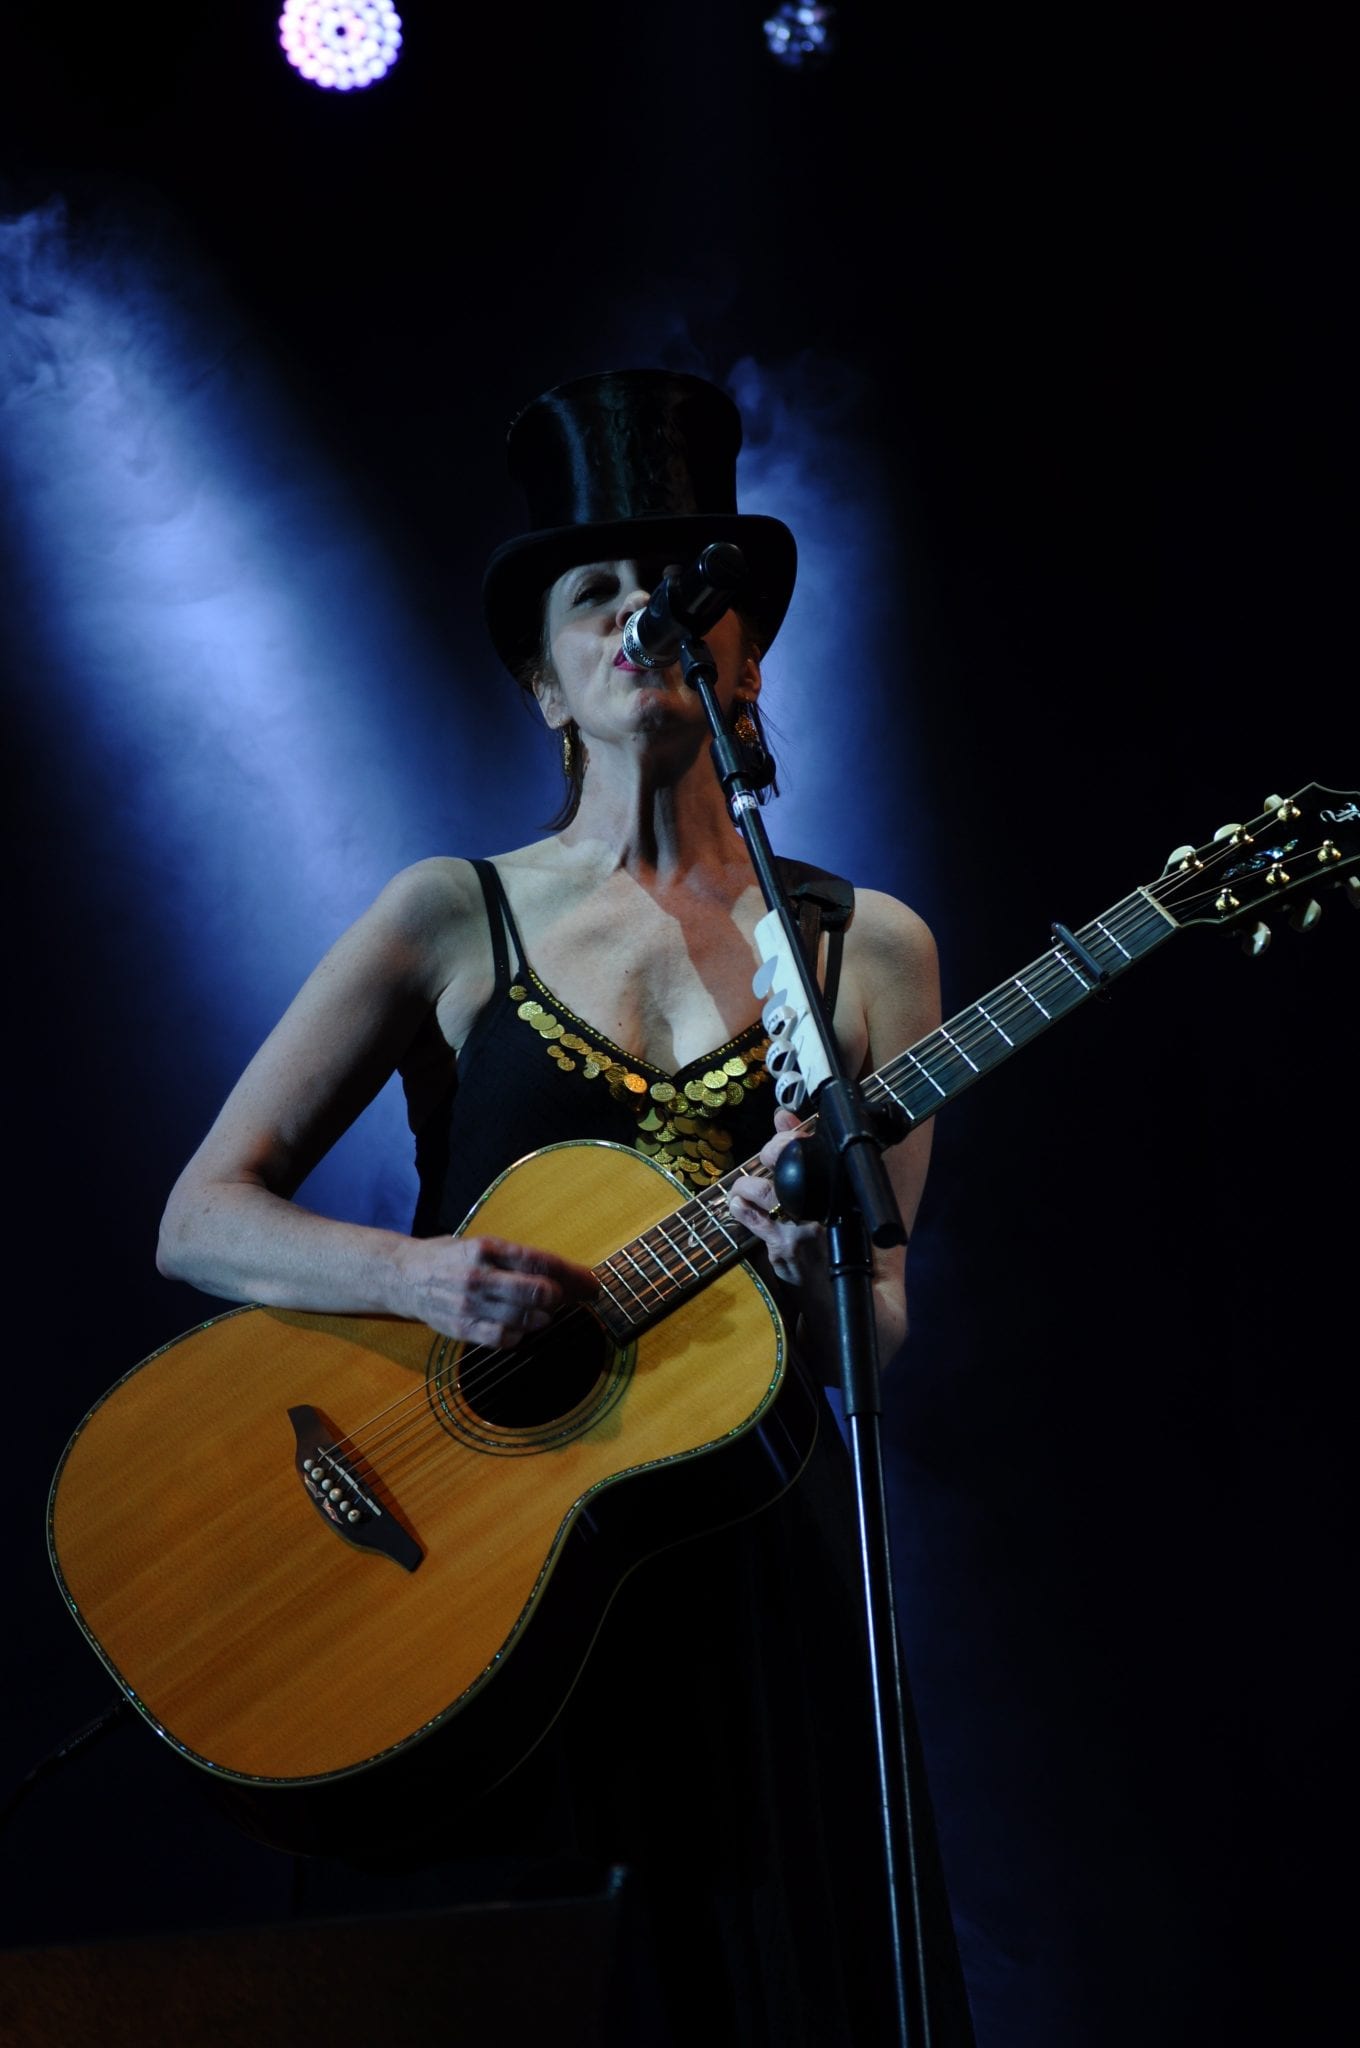 Crónica del concierto de Suzanne Vega, Festival Madgarden, 18-07-2015